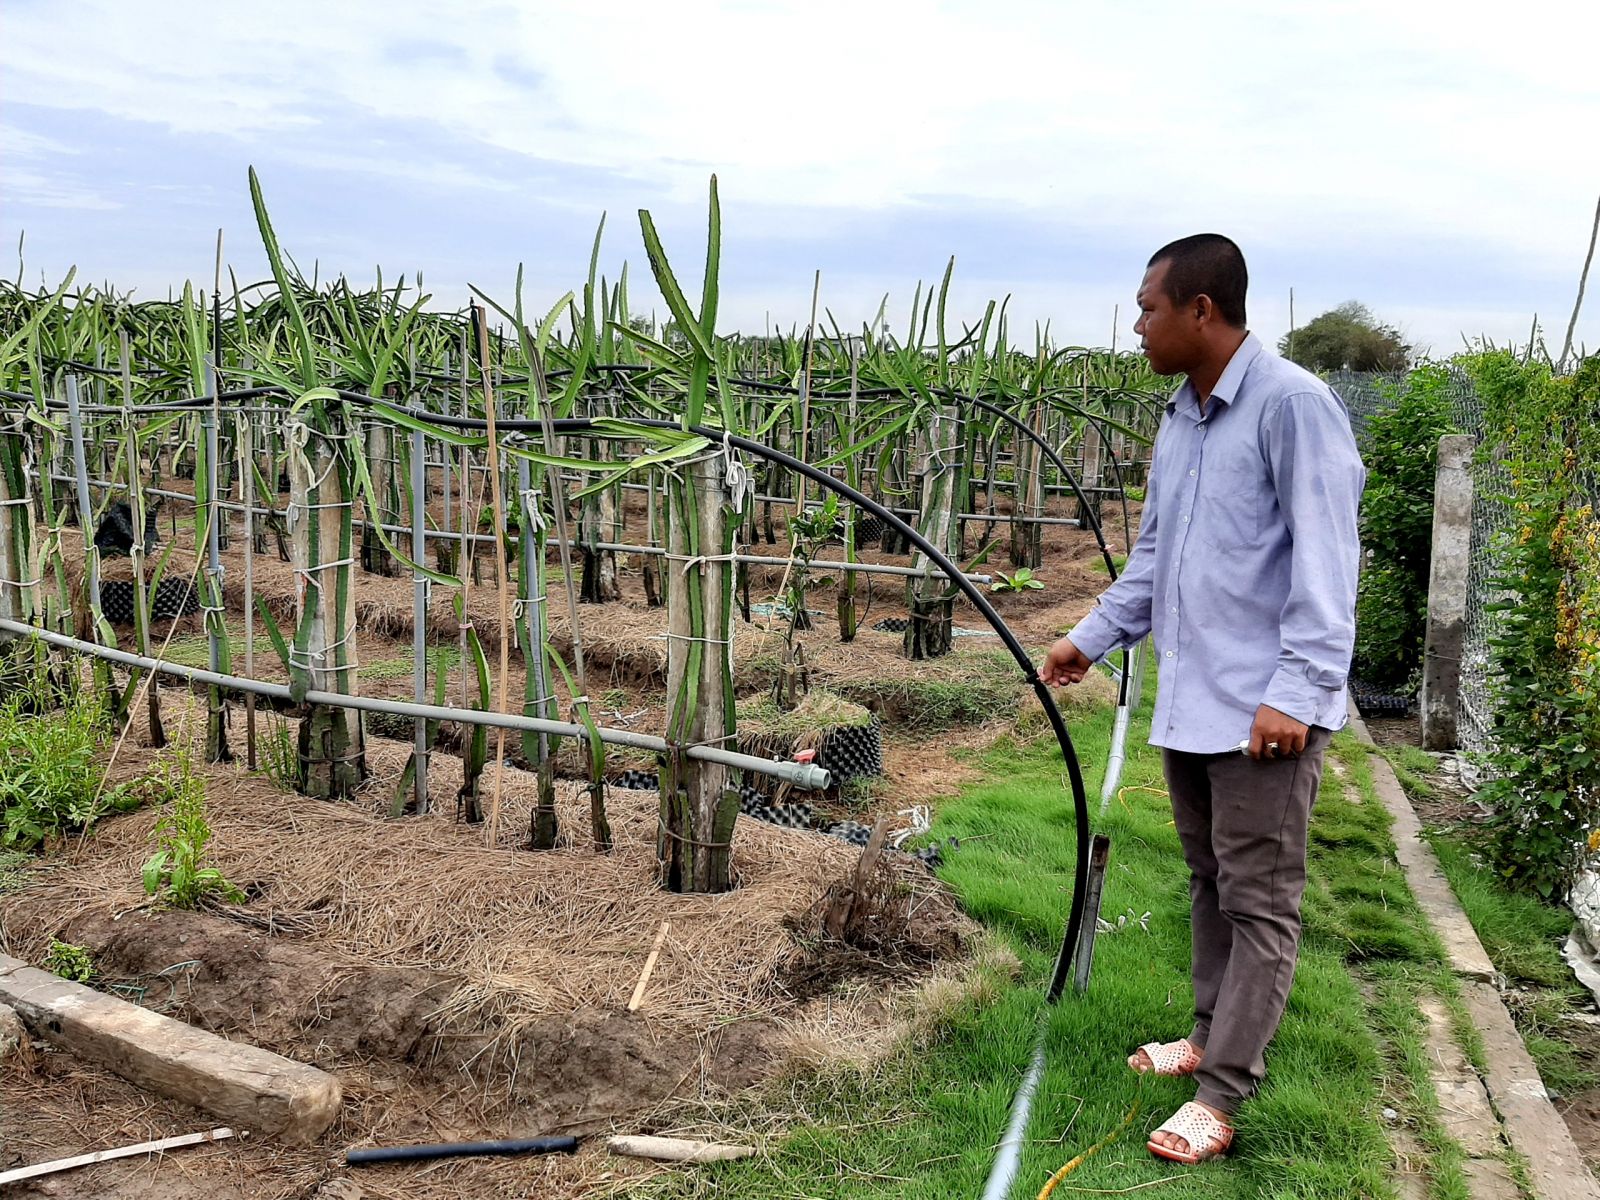 Vườn thanh long tổ yến của anh Khang được trồng theo hướng hữu cơ, đầu tư hệ thống tưới phun và tưới nhỏ giọt tự động phục vụ việc bón phân cho vườn. Tất cả đều được điều khiển từ xa